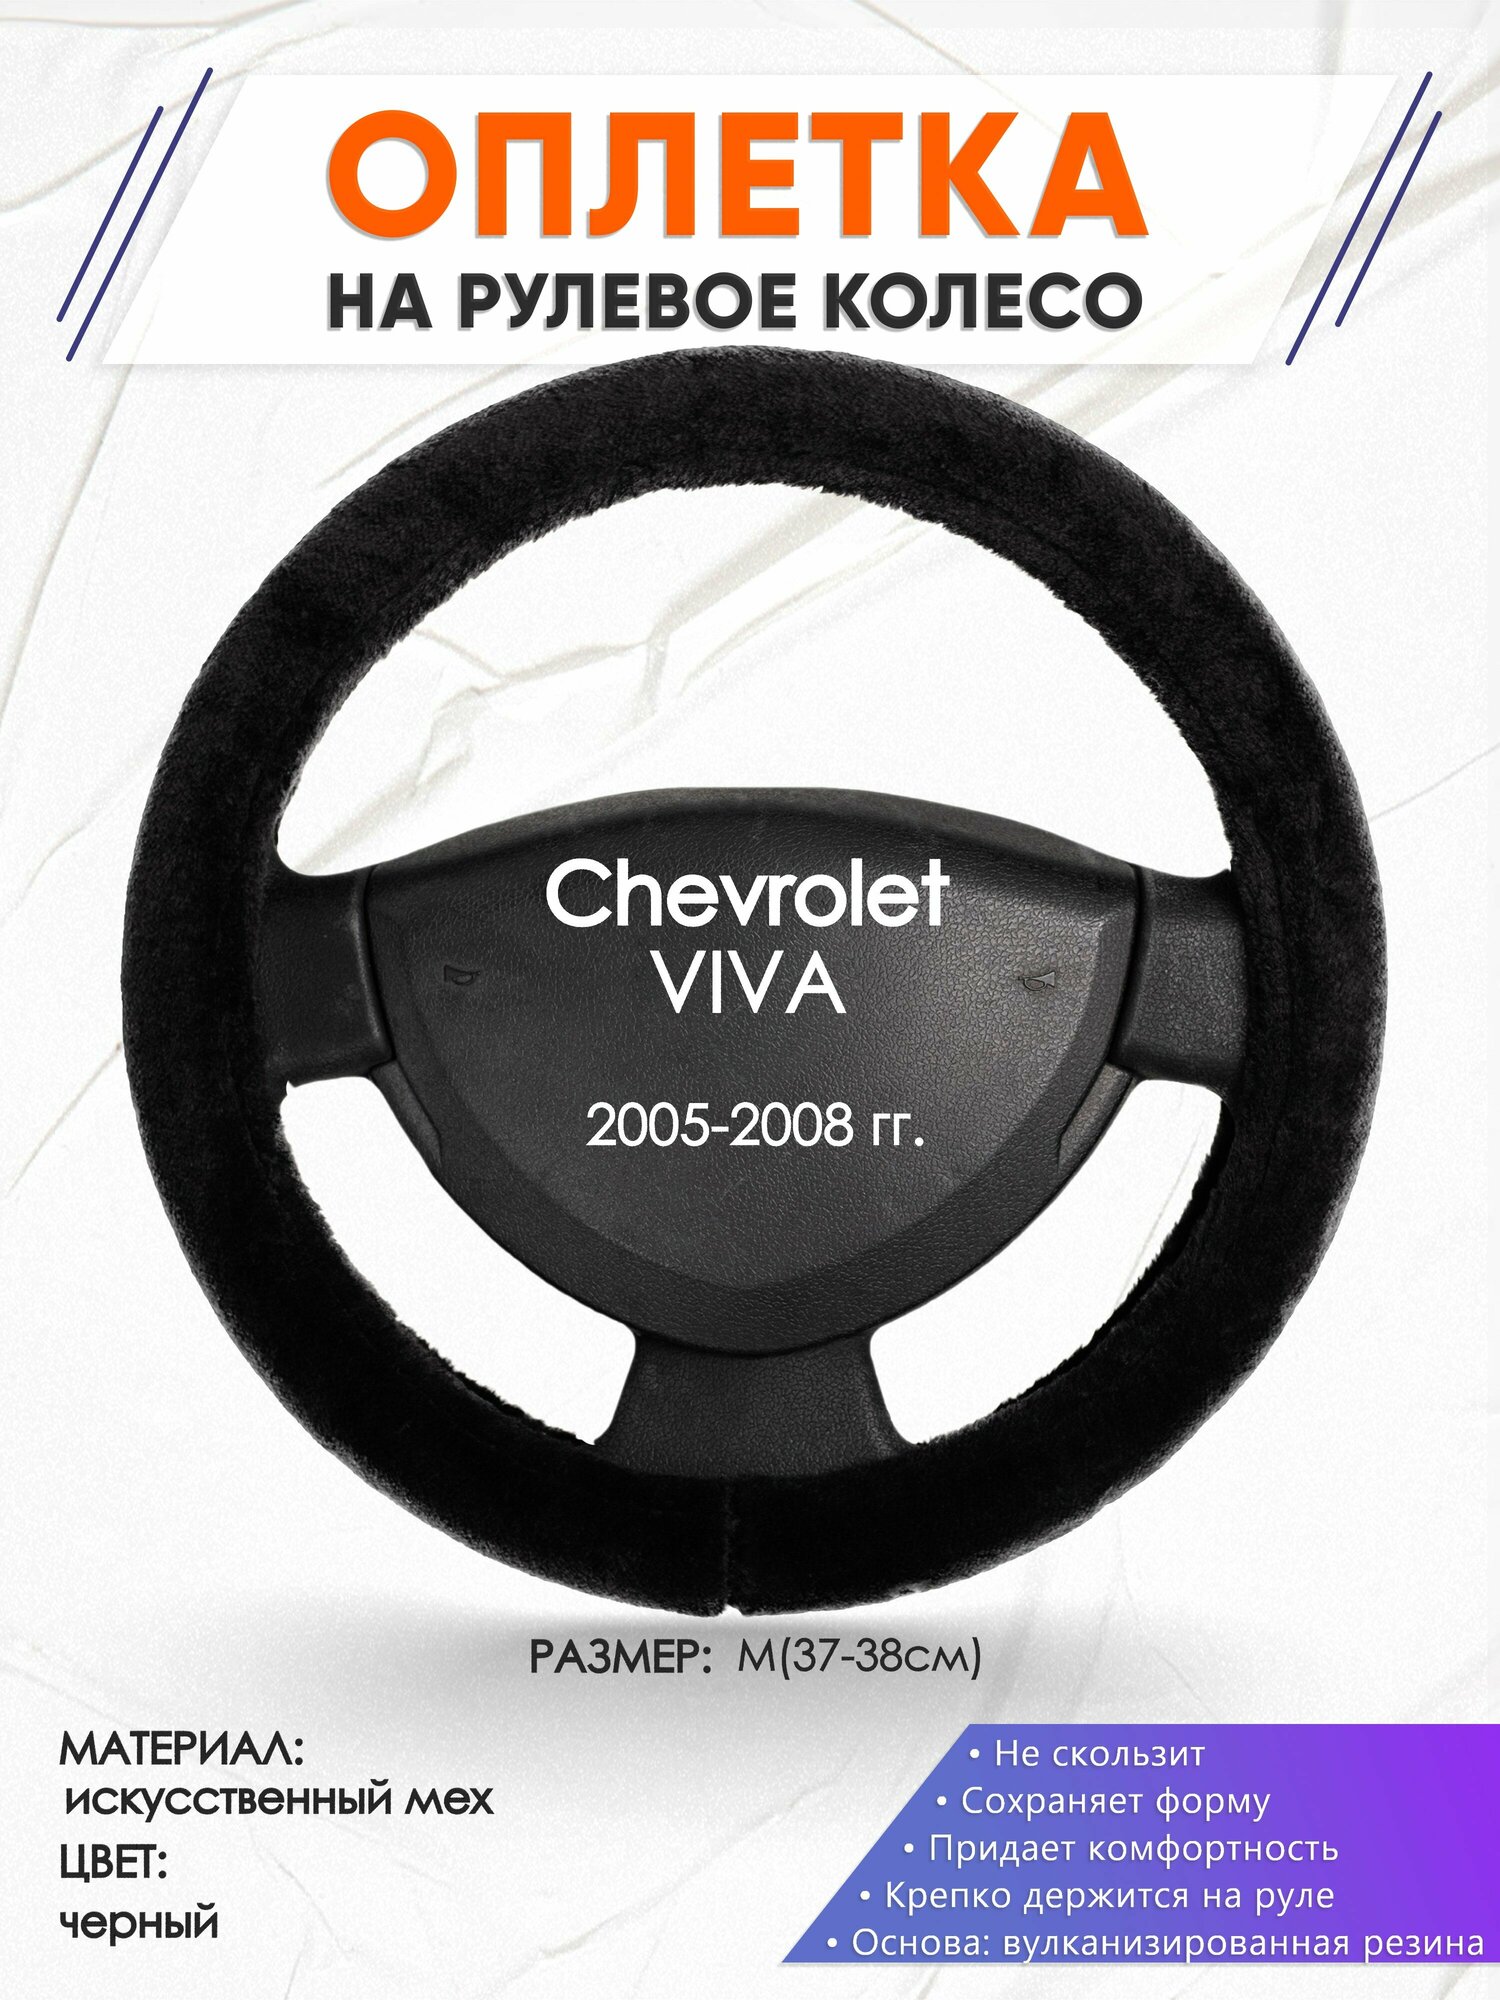 Оплетка наруль для Chevrolet VIVA(Шевроле Вива) 2005-2008 годов выпуска, размер M(37-38см), Искусственный мех 45